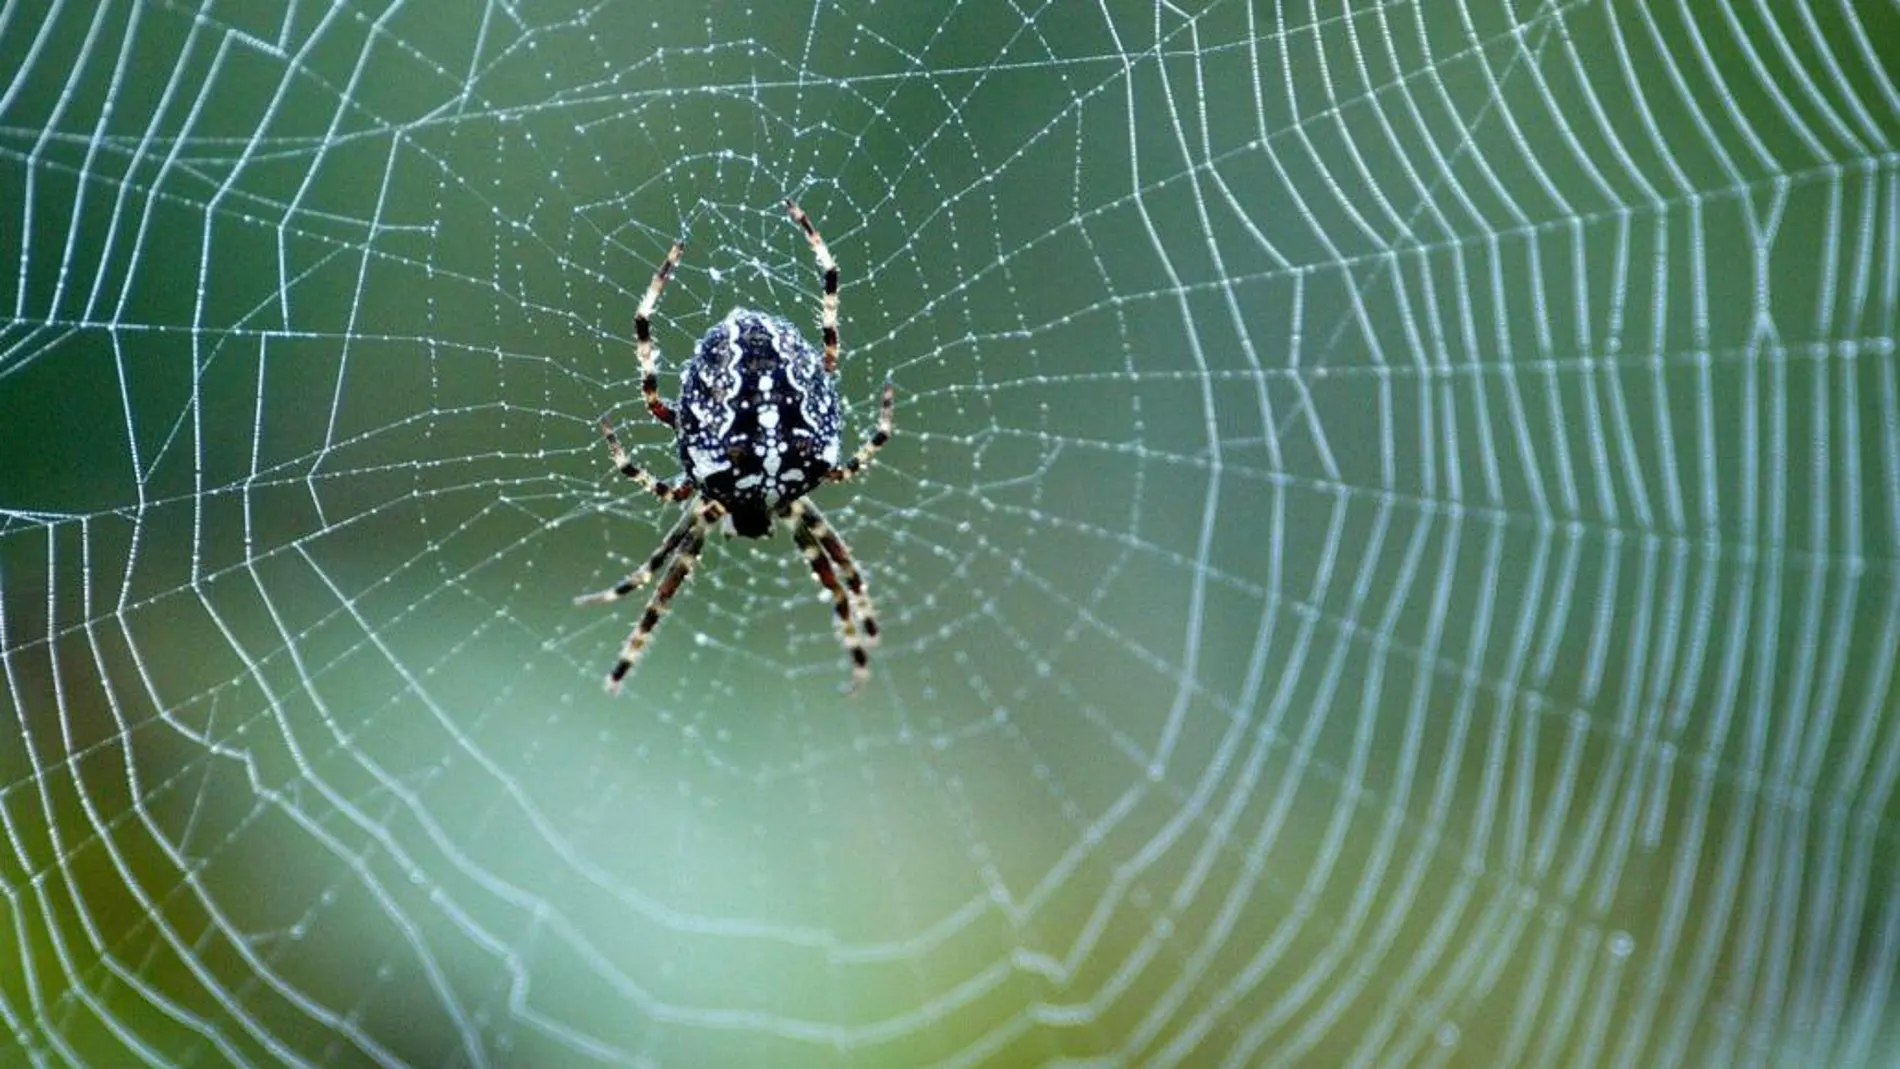 La tela de araña tiene una resistencia sorprendente